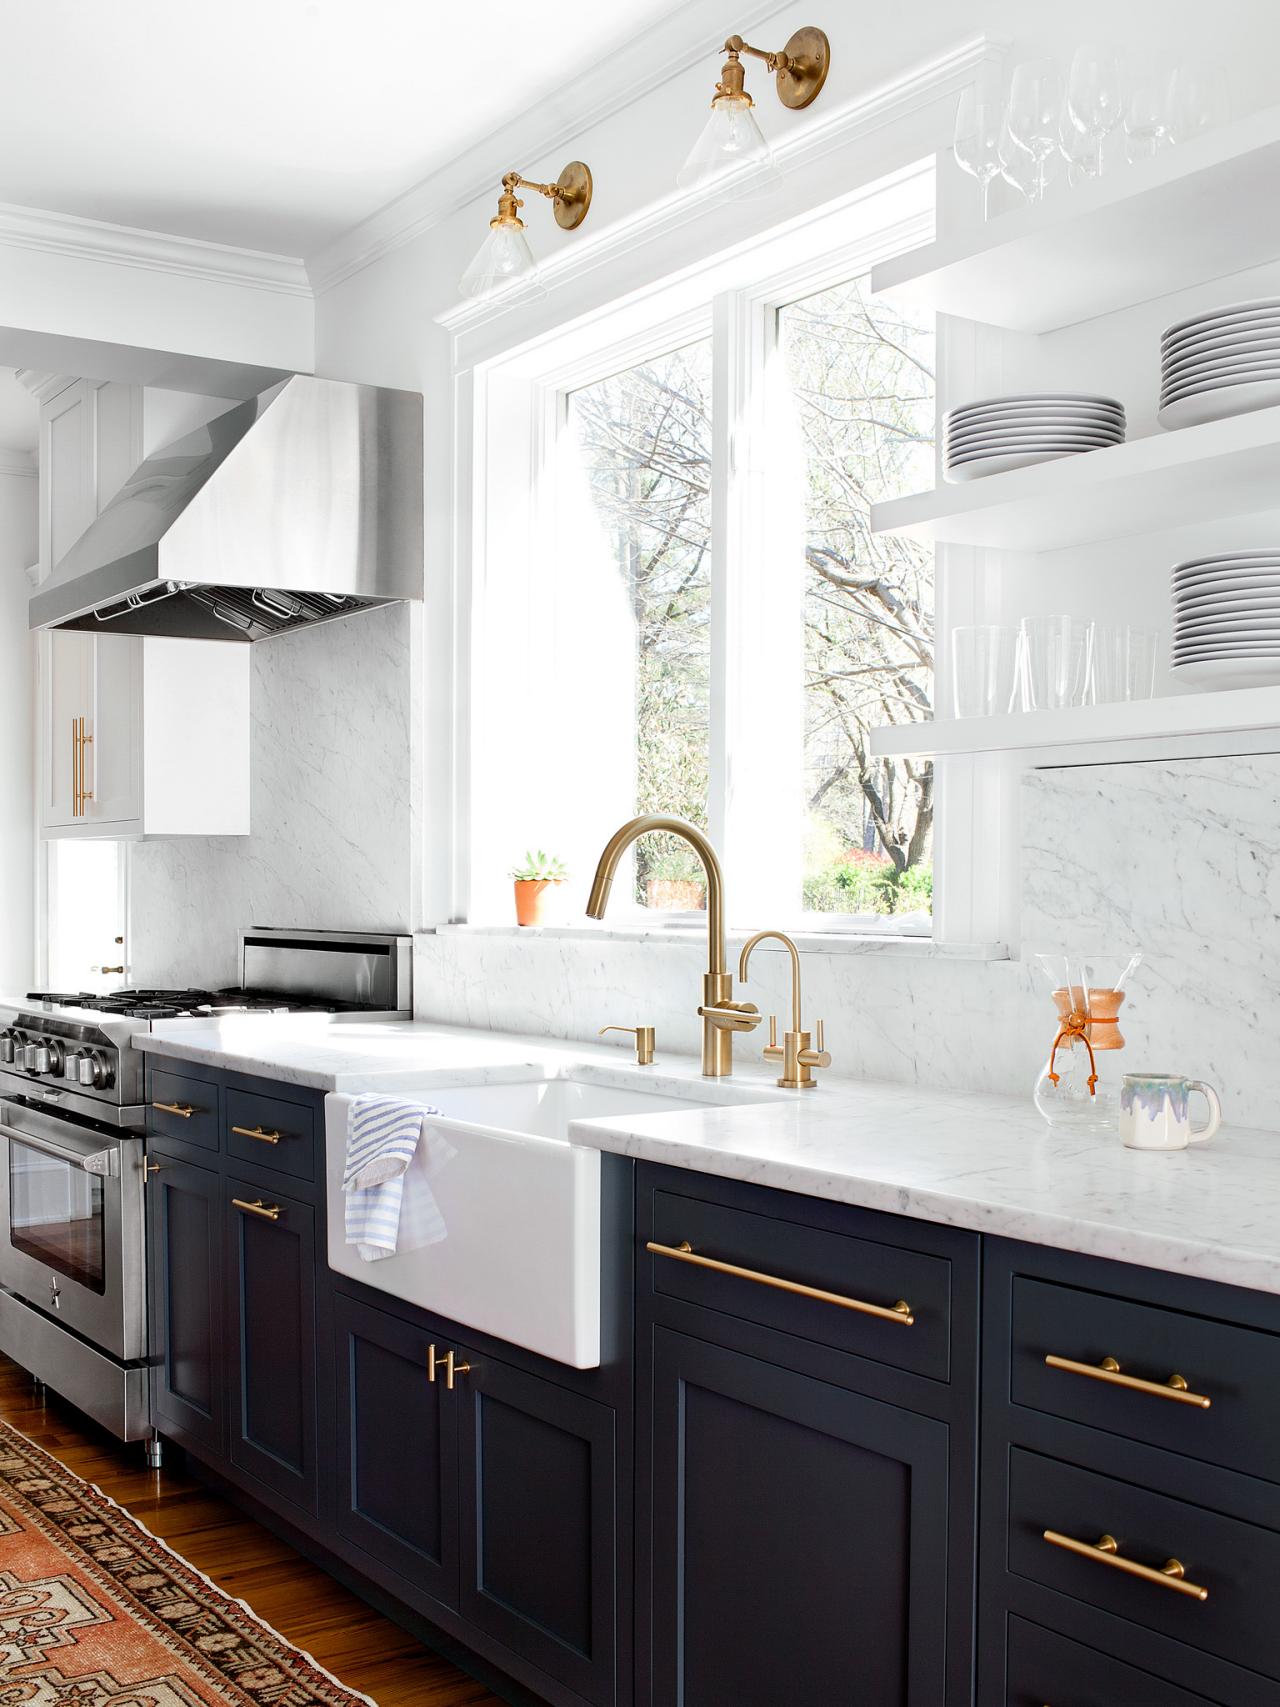 Gorgeous Kitchen Cabinet Hardware Ideas, Kitchen Cabinet Hardware Ideas 2019